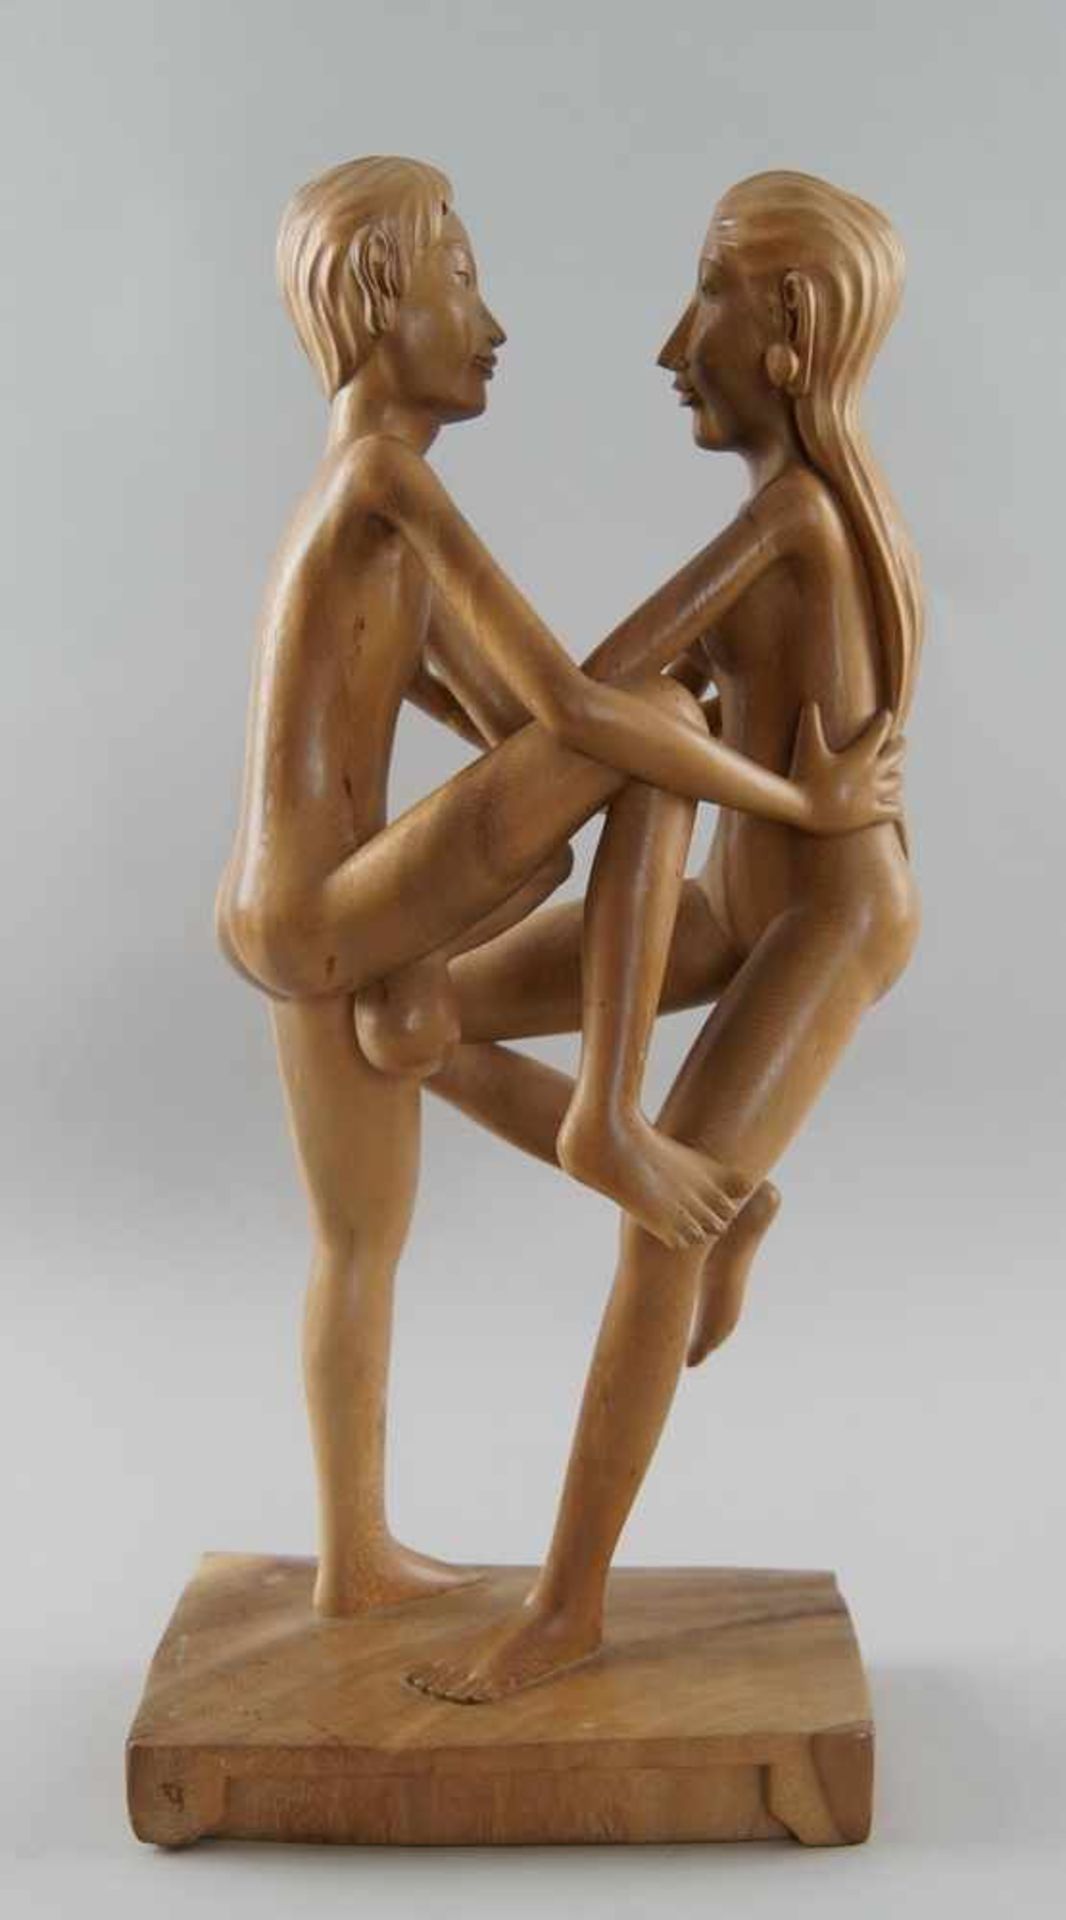 Paar / Erotische Akt Skulptur, Holz geschnitzt, in erotischer Pose, H 53 cm - Bild 3 aus 6